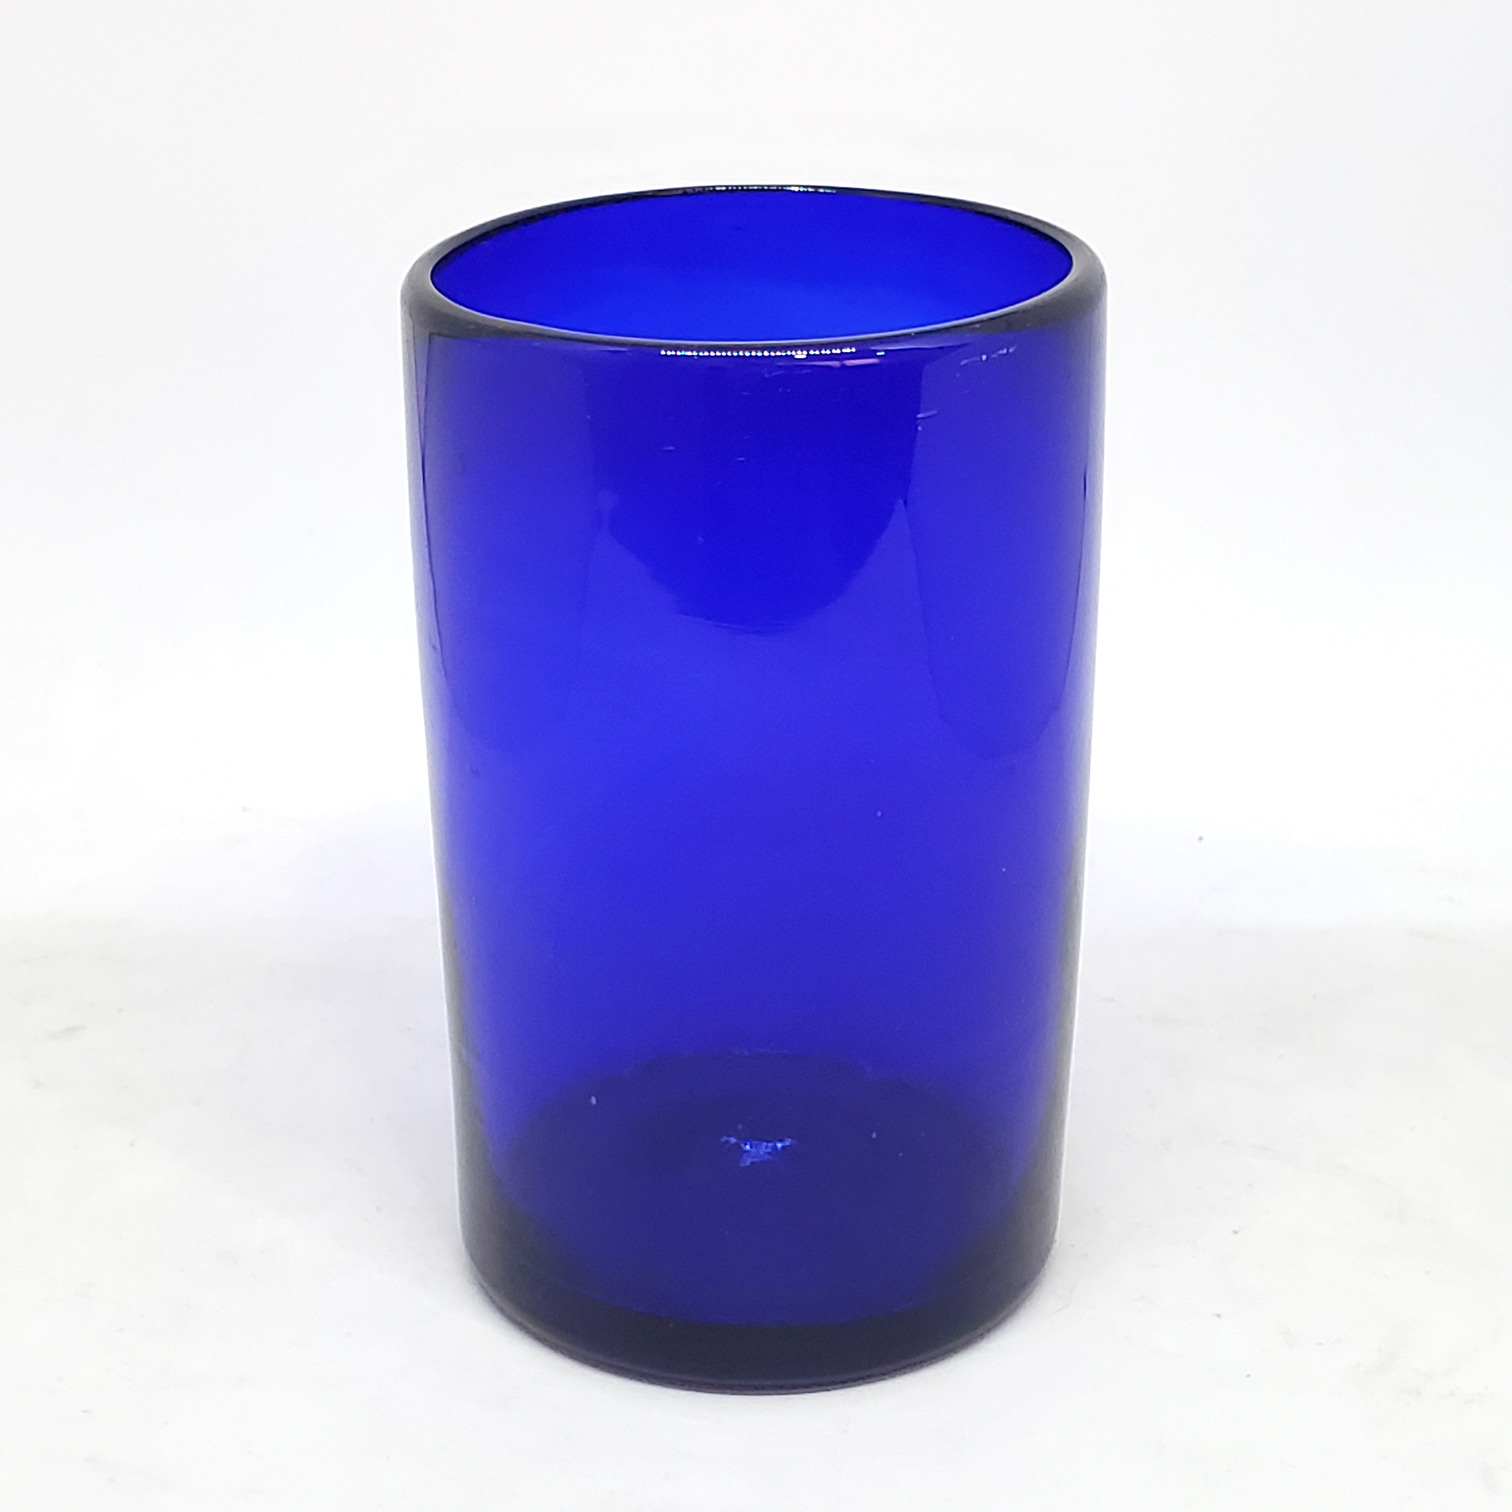 Novedades / Juego de 6 vasos grandes color azul cobalto / �stos artesanales vasos le dar�n un toque cl�sico a su bebida favorita.